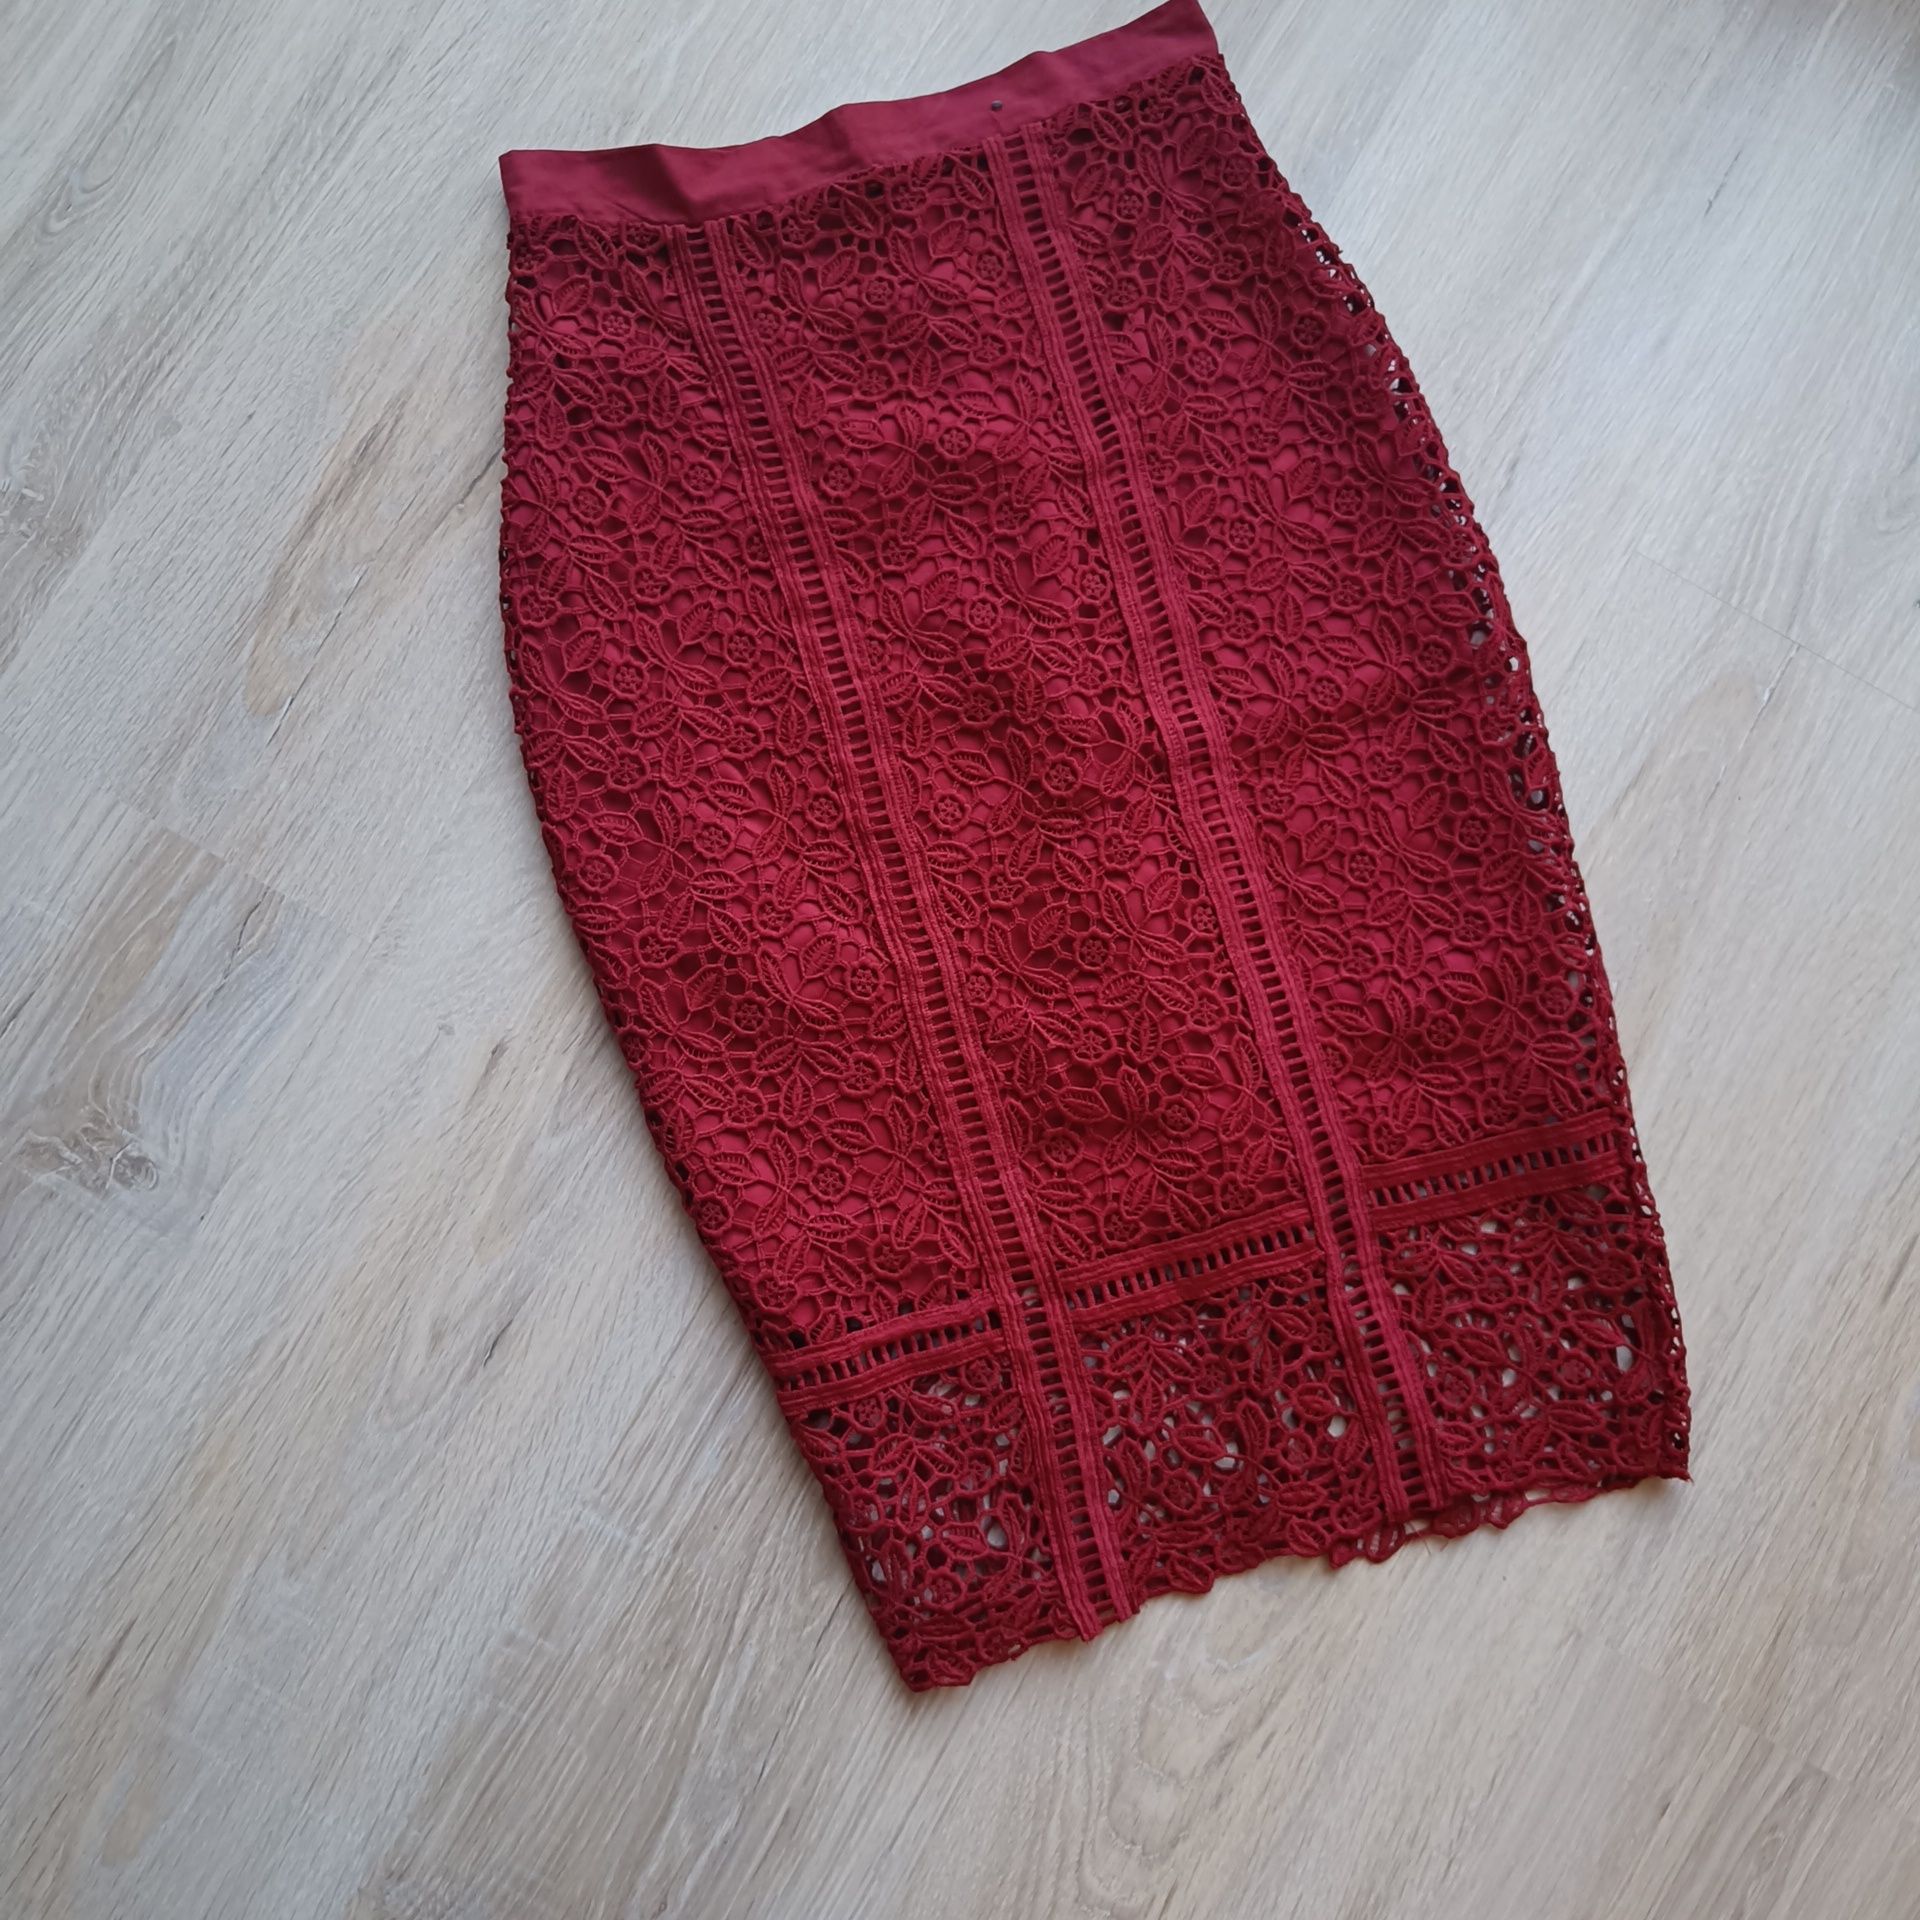 Spódnica czerwona bordowa burgund koronka elegancka midi klasyczna